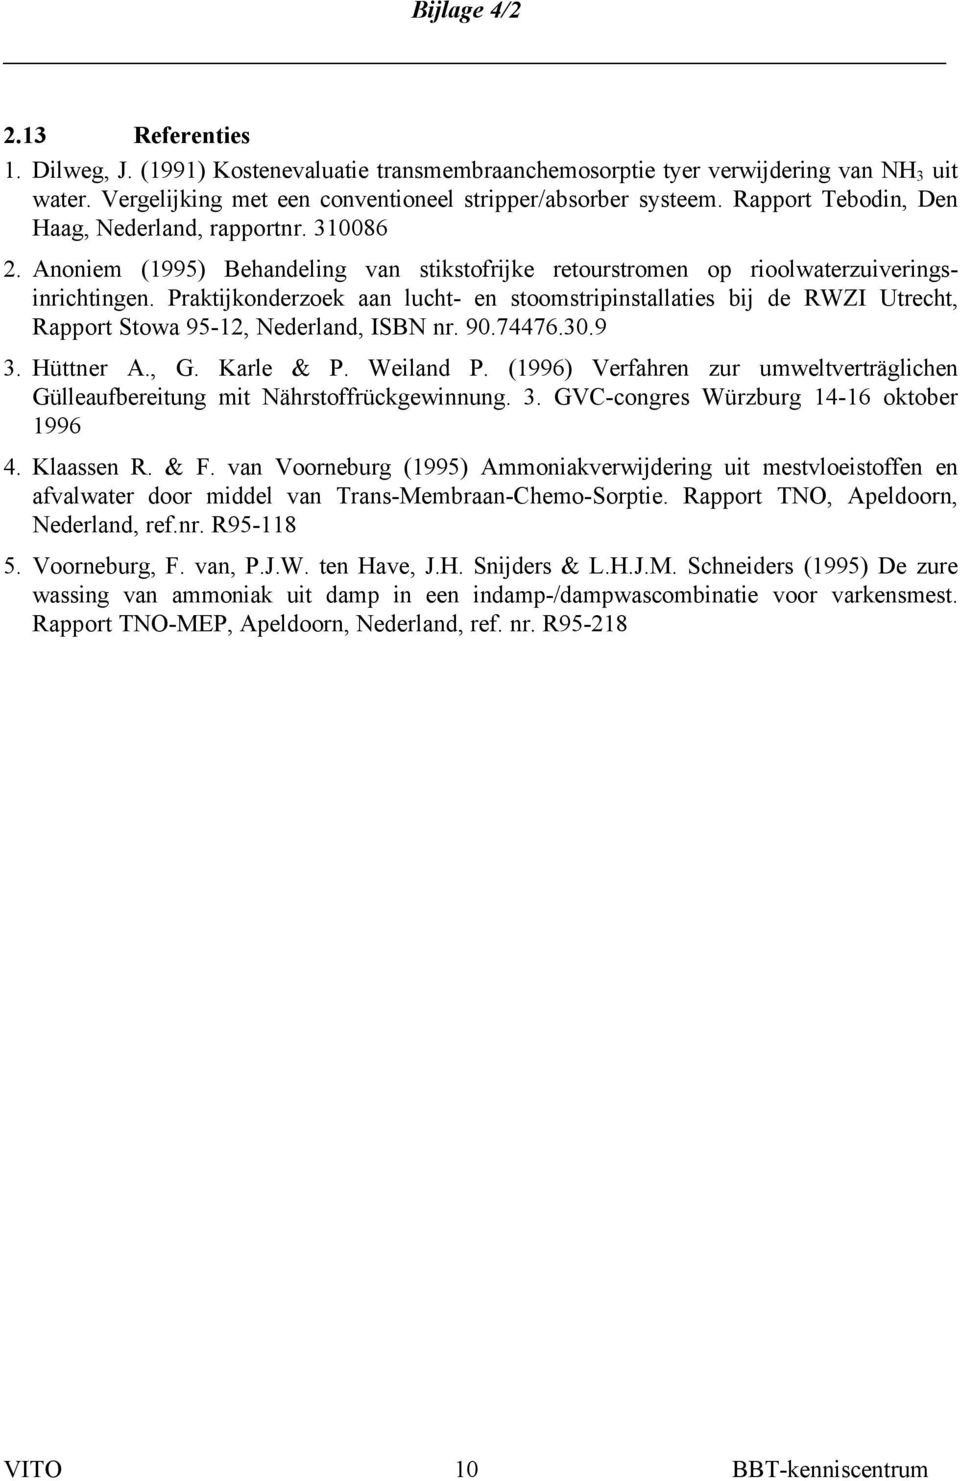 Praktijkonderzoek aan lucht- en stoomstripinstallaties bij de RWZI Utrecht, Rapport Stowa 95-12, Nederland, ISBN nr. 90.74476.30.9 3. Hüttner A., G. Karle & P. Weiland P.